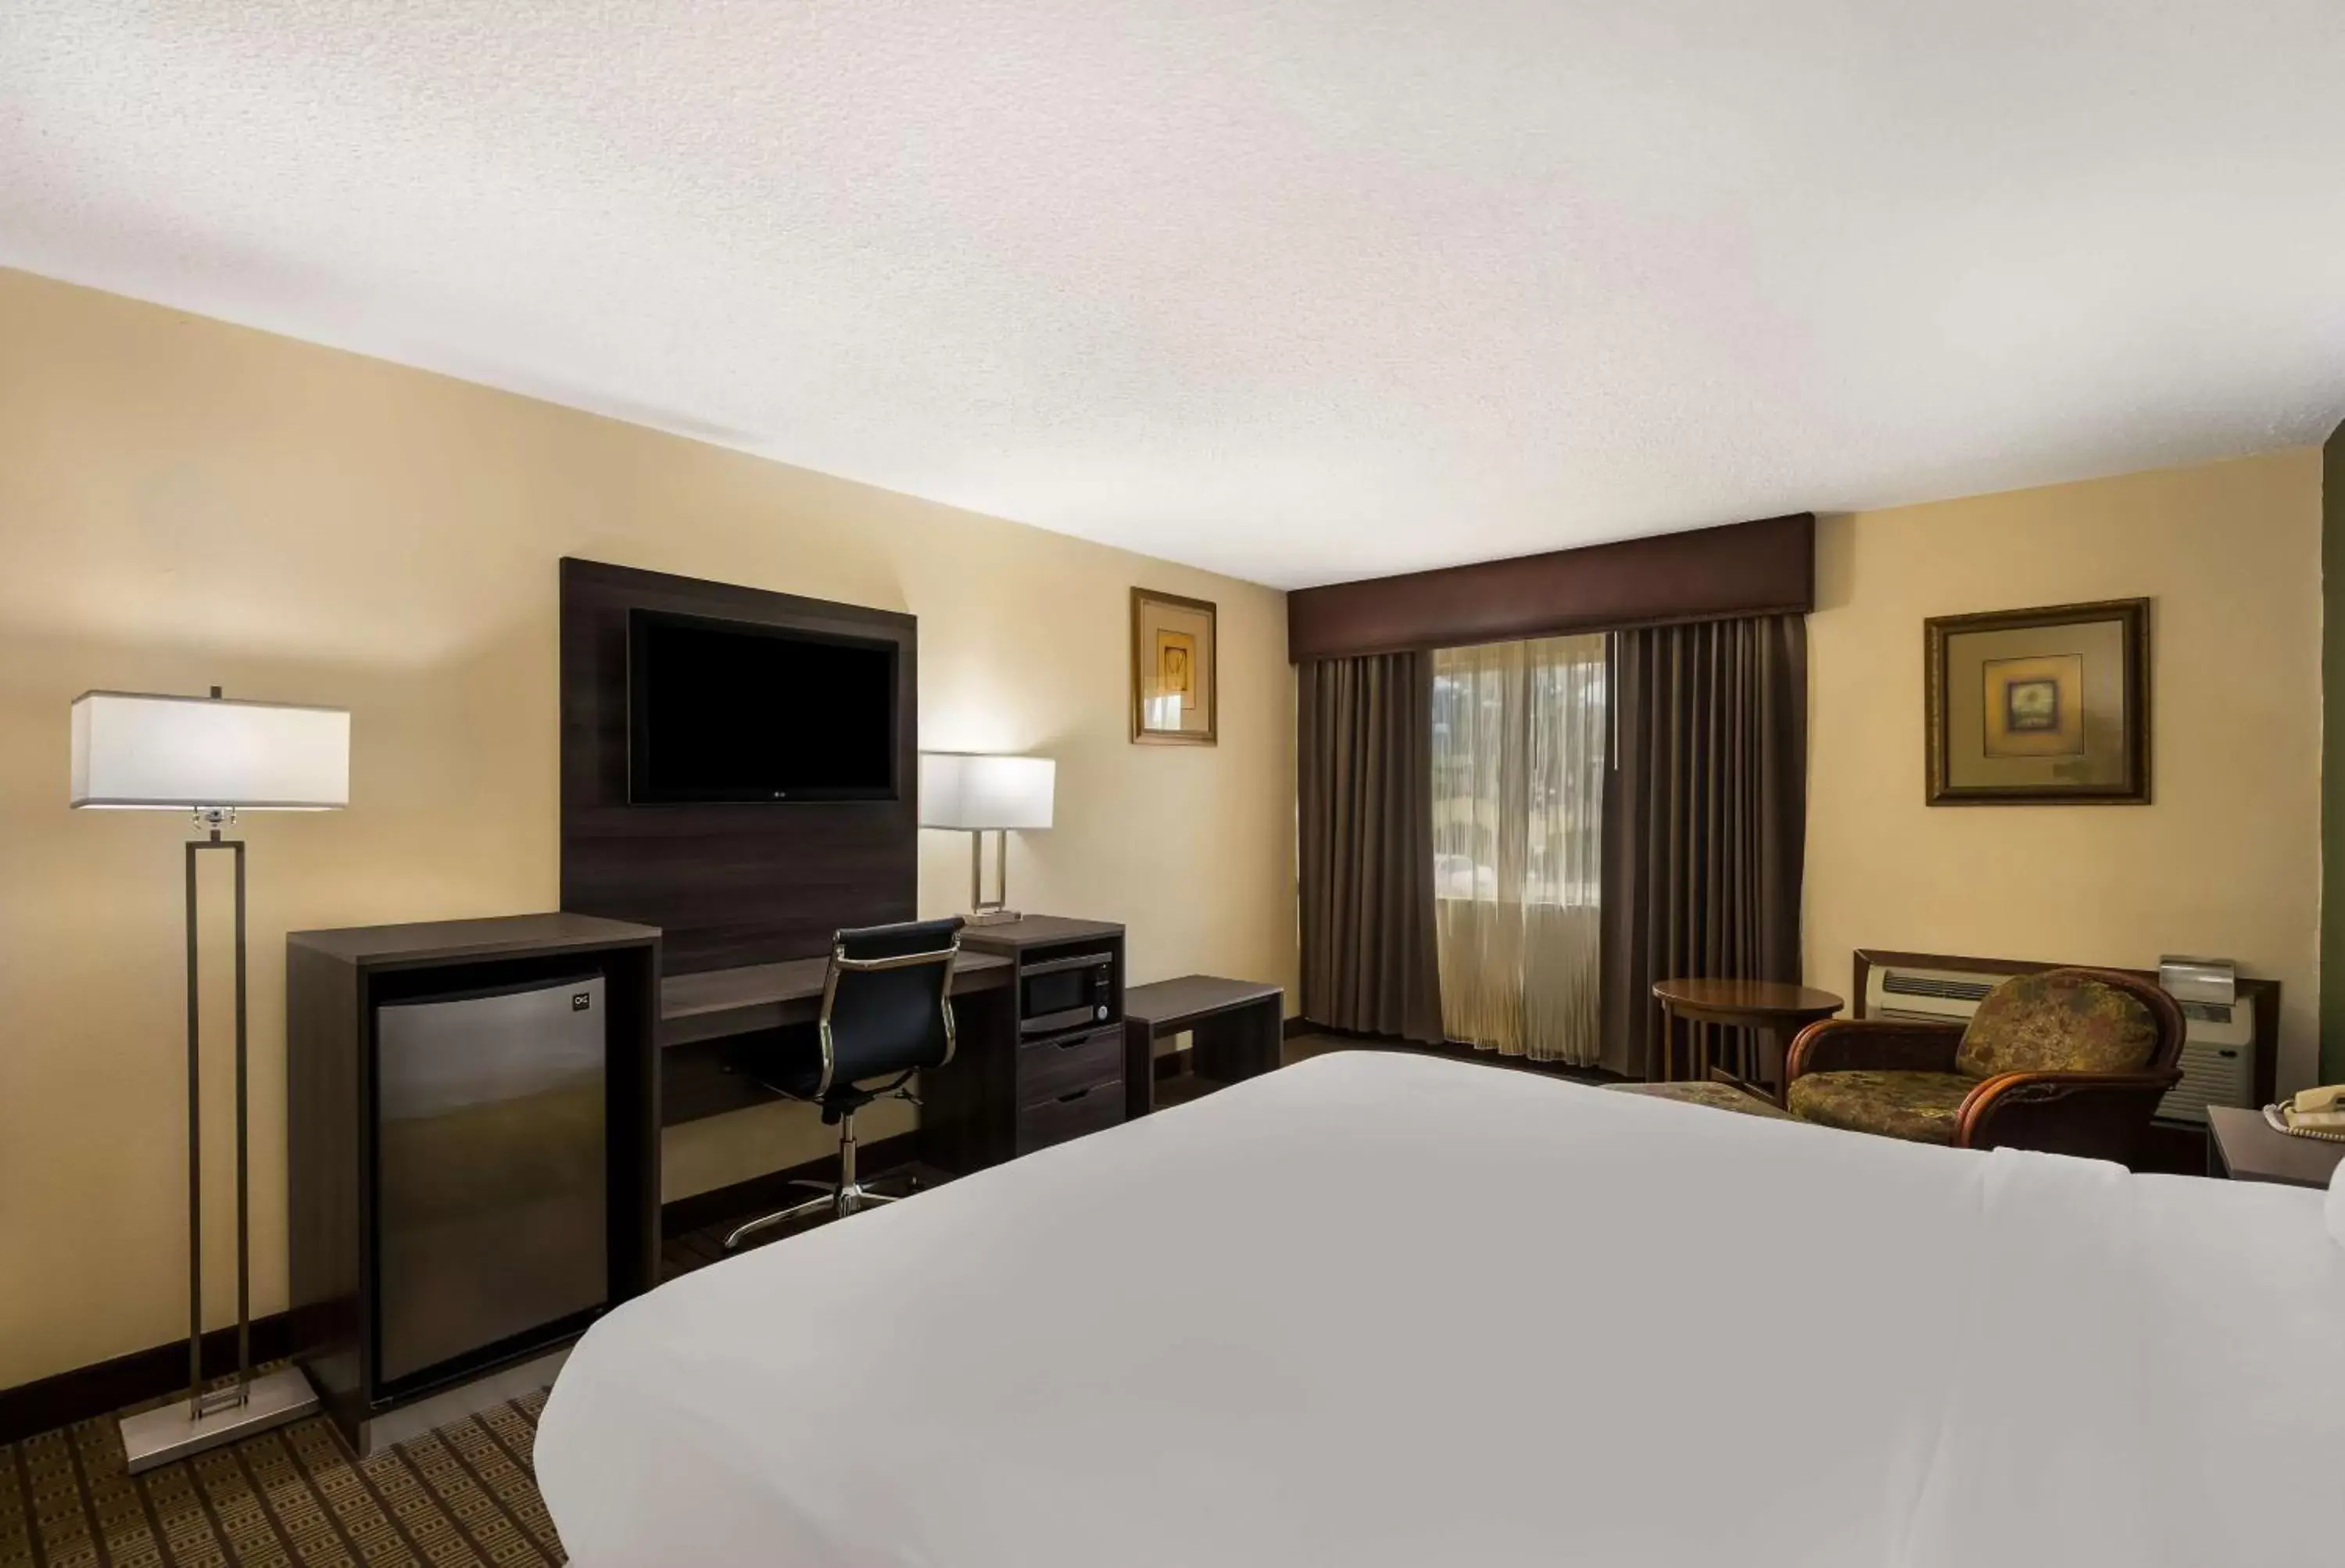 Bedroom, TV/Entertainment Center in Best Western Prairie Inn & Conference Center